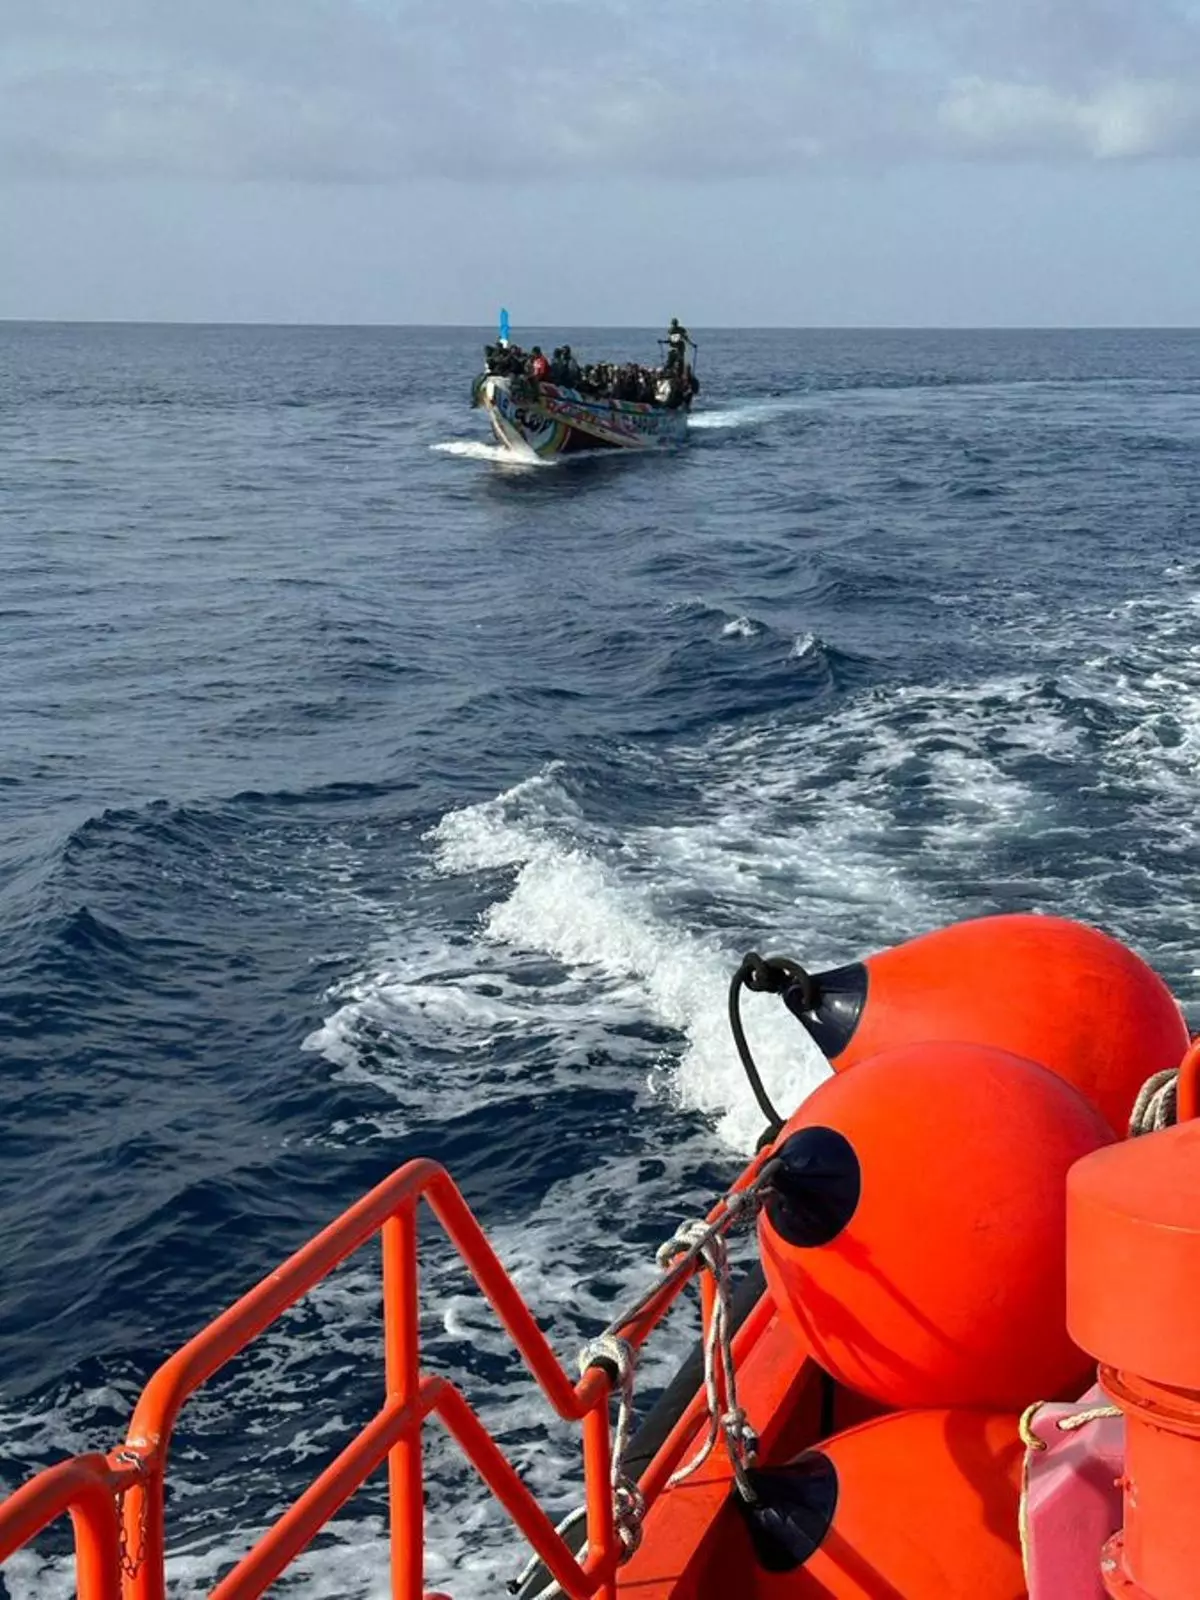 Rescatan a 172 migrantes, uno de ellos fallecido, cuando se encontraban en aguas próximas a Gran Canaria